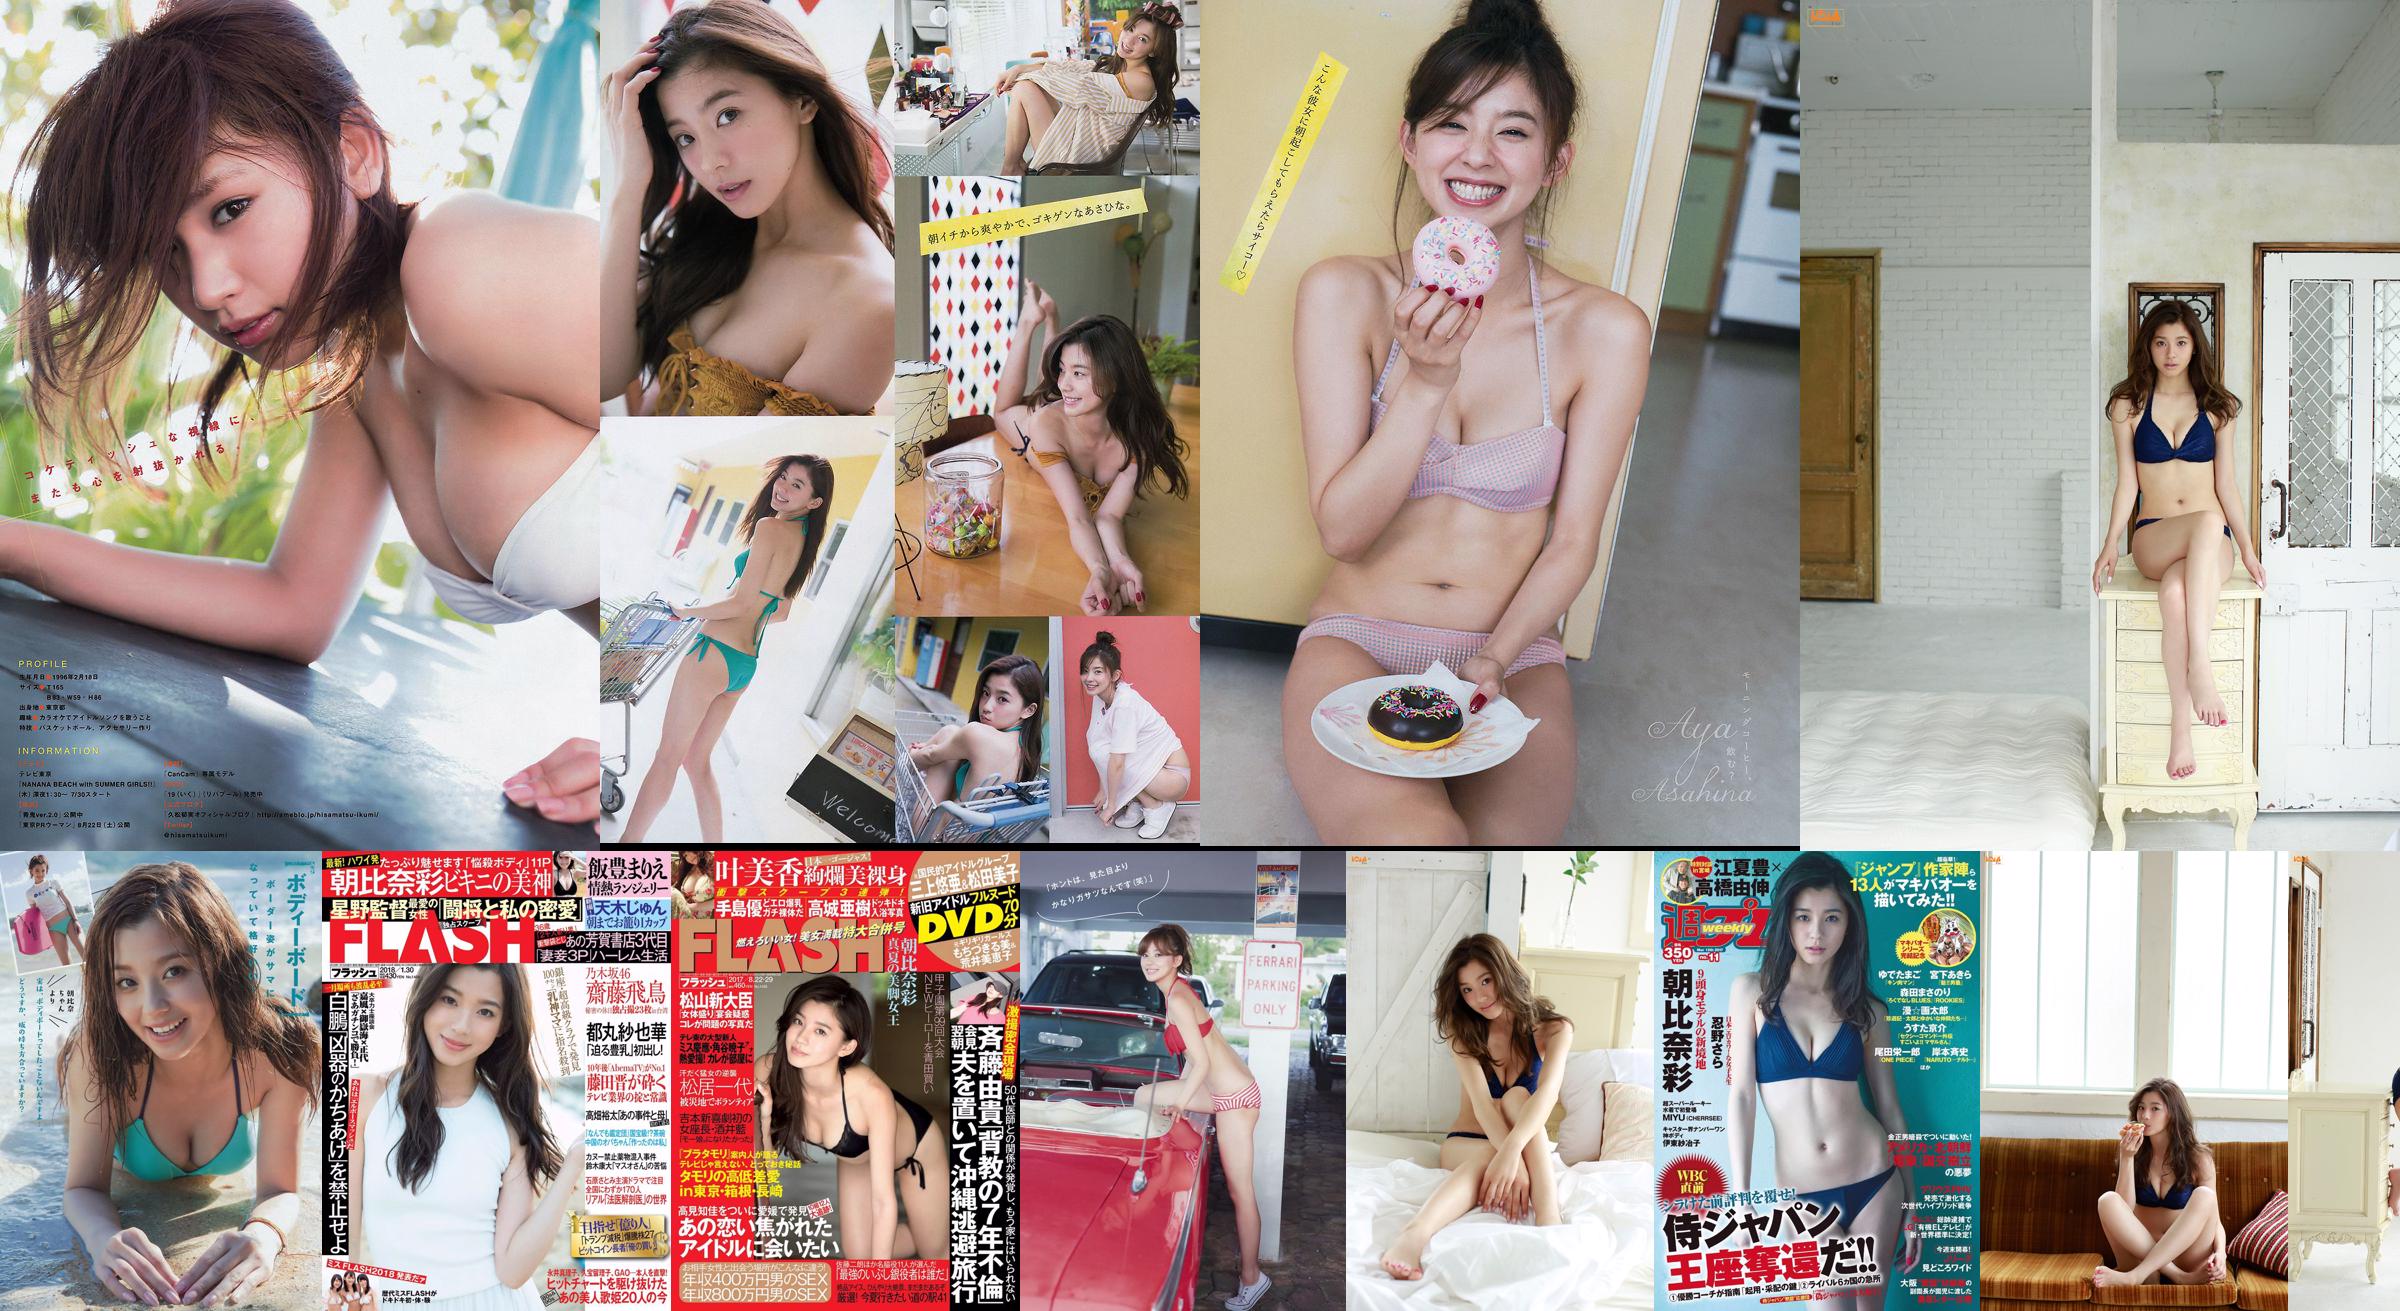 [Young Magazine] Asahina Aya Hisamatsu Yumi Tomaru Sayaka 2015 No.32 Photo Magazine No.cafda3 หน้า 2